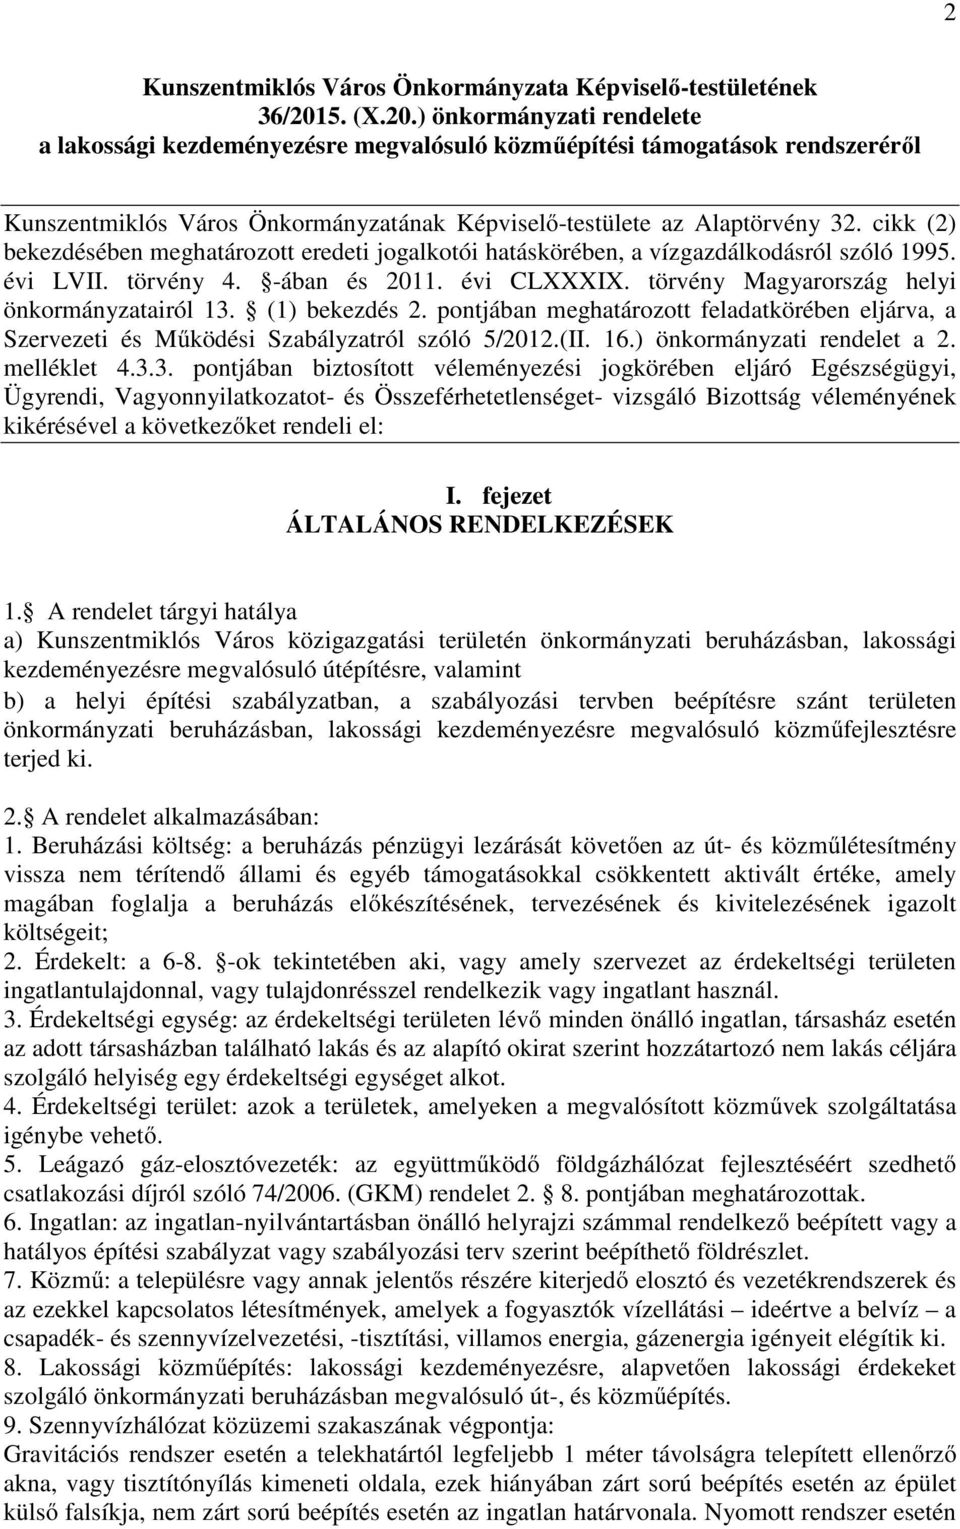 cikk (2) bekezdésében meghatározott eredeti jogalkotói hatáskörében, a vízgazdálkodásról szóló 1995. évi LVII. törvény 4. -ában és 2011. évi CLXXXIX. törvény Magyarország helyi önkormányzatairól 13.